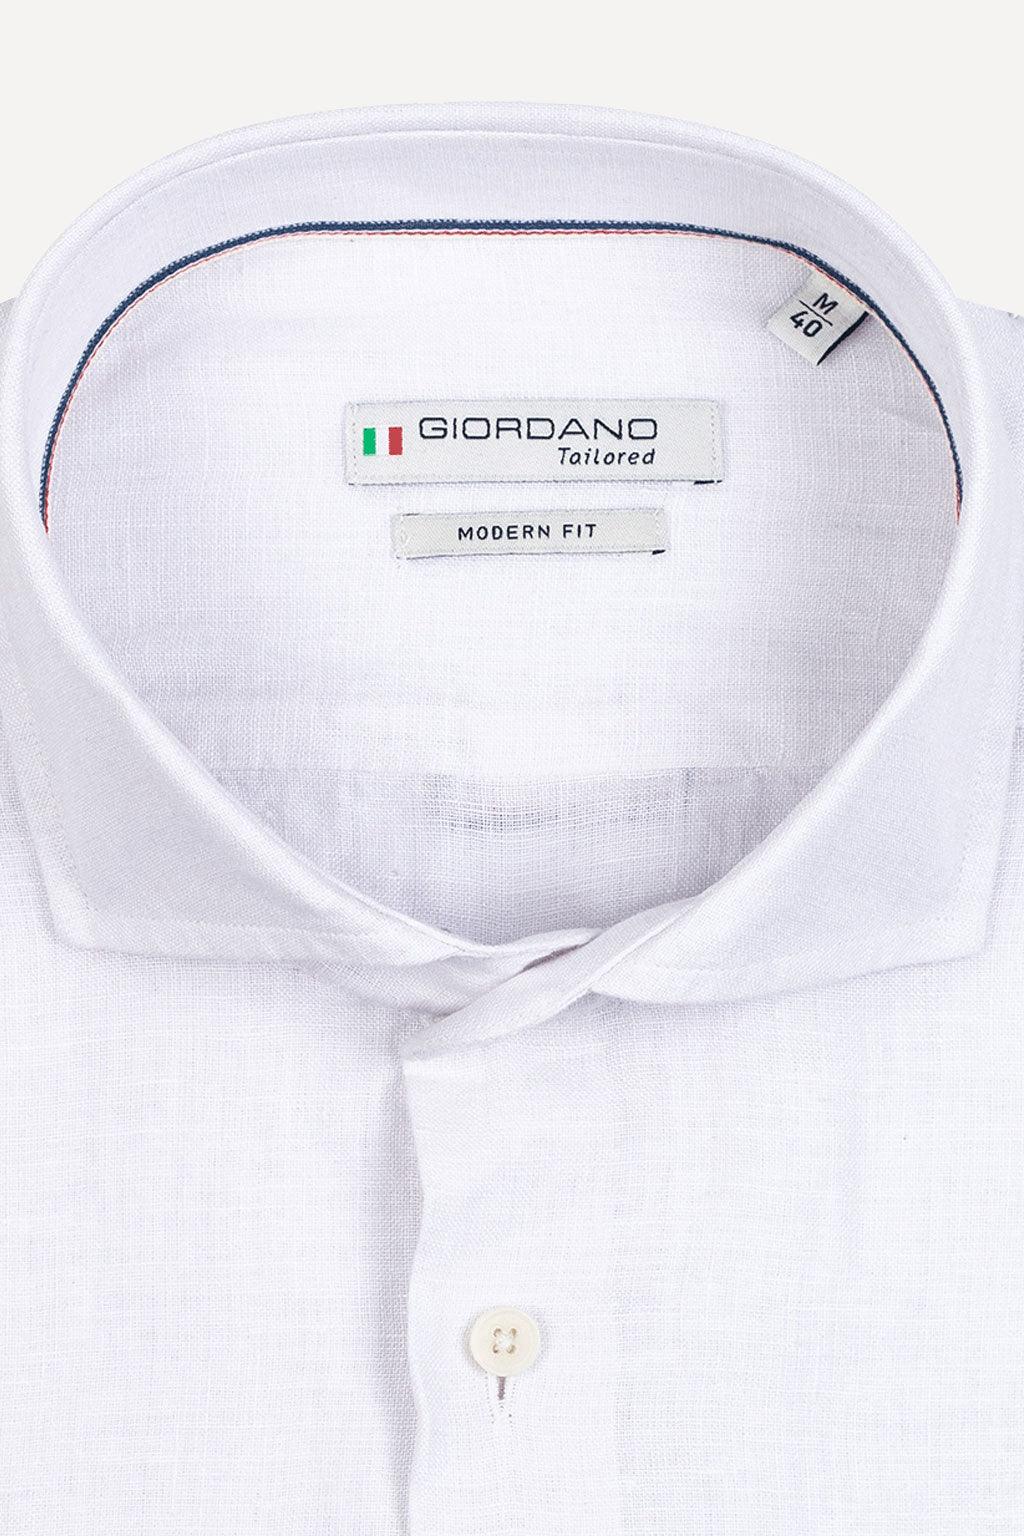 Giordano overhemd lange mouw